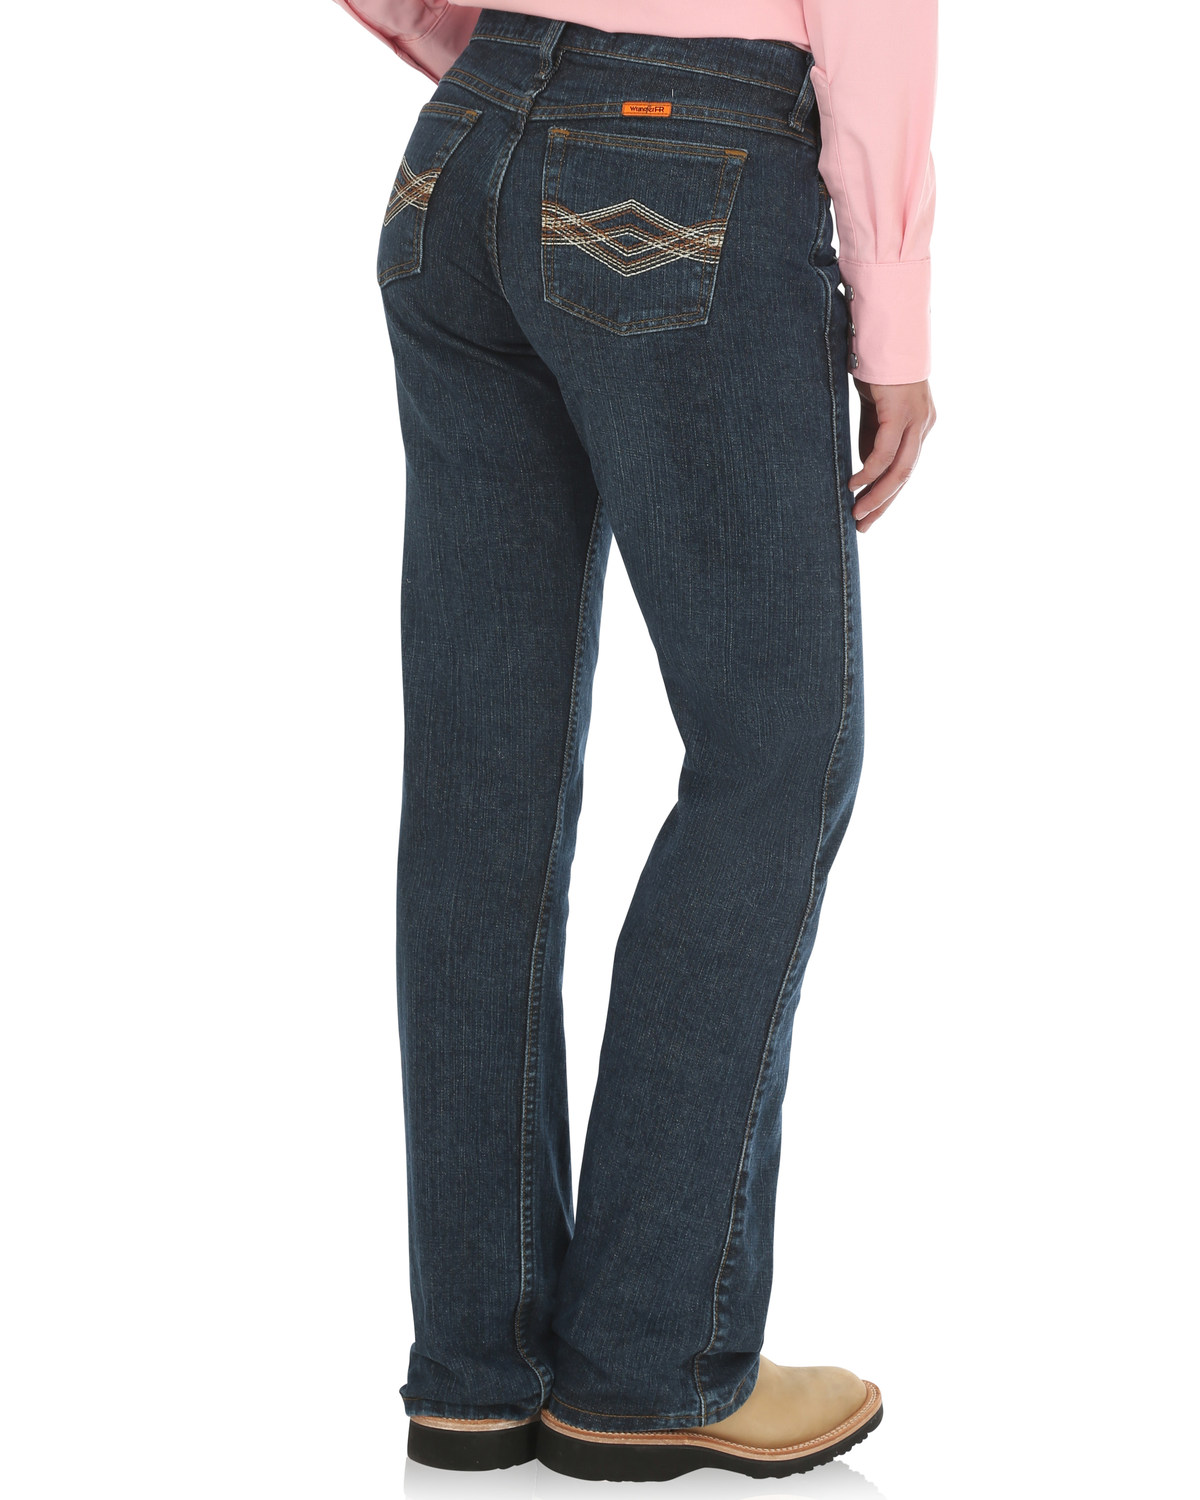 Wrangler Women's FR Crosshatch Jeans